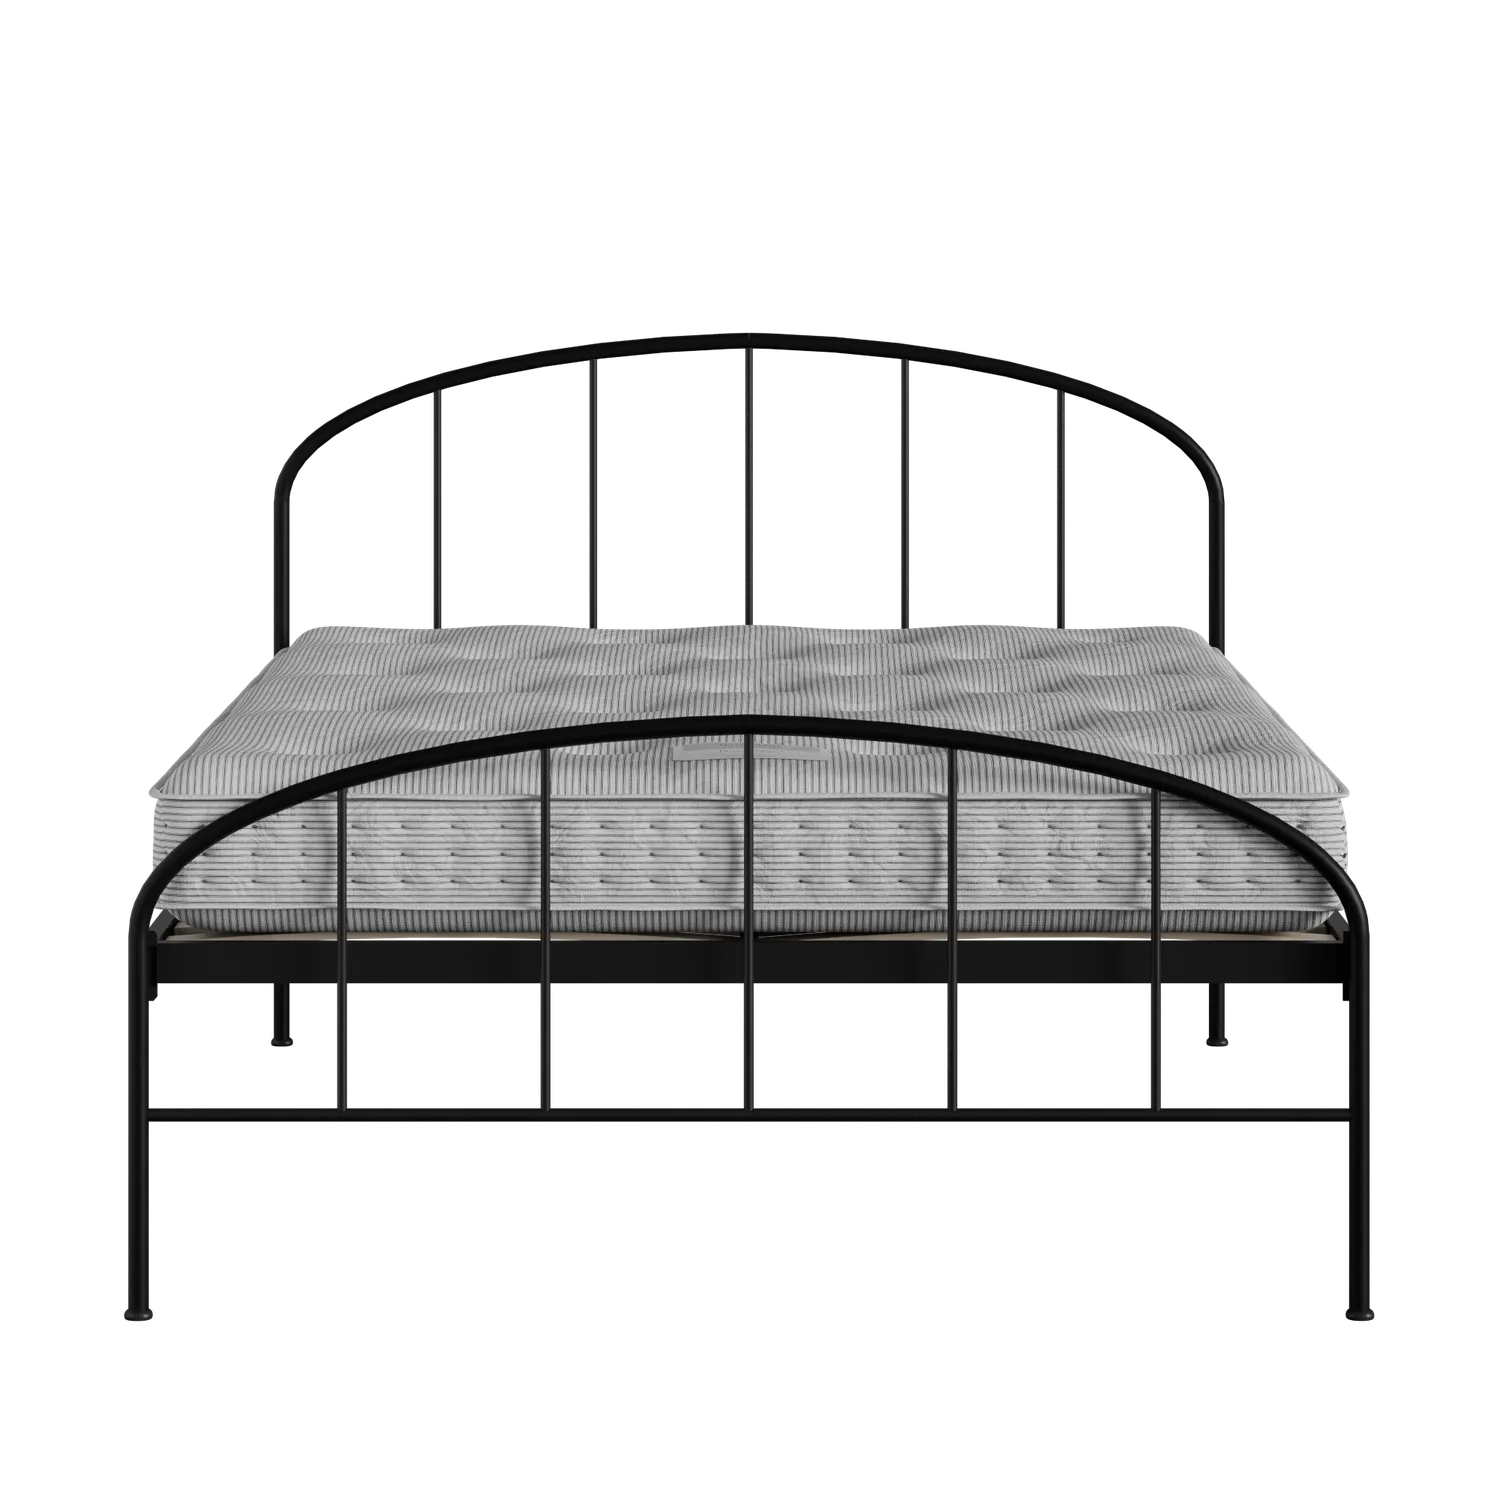 Waldo cama de metal en negro con colchón